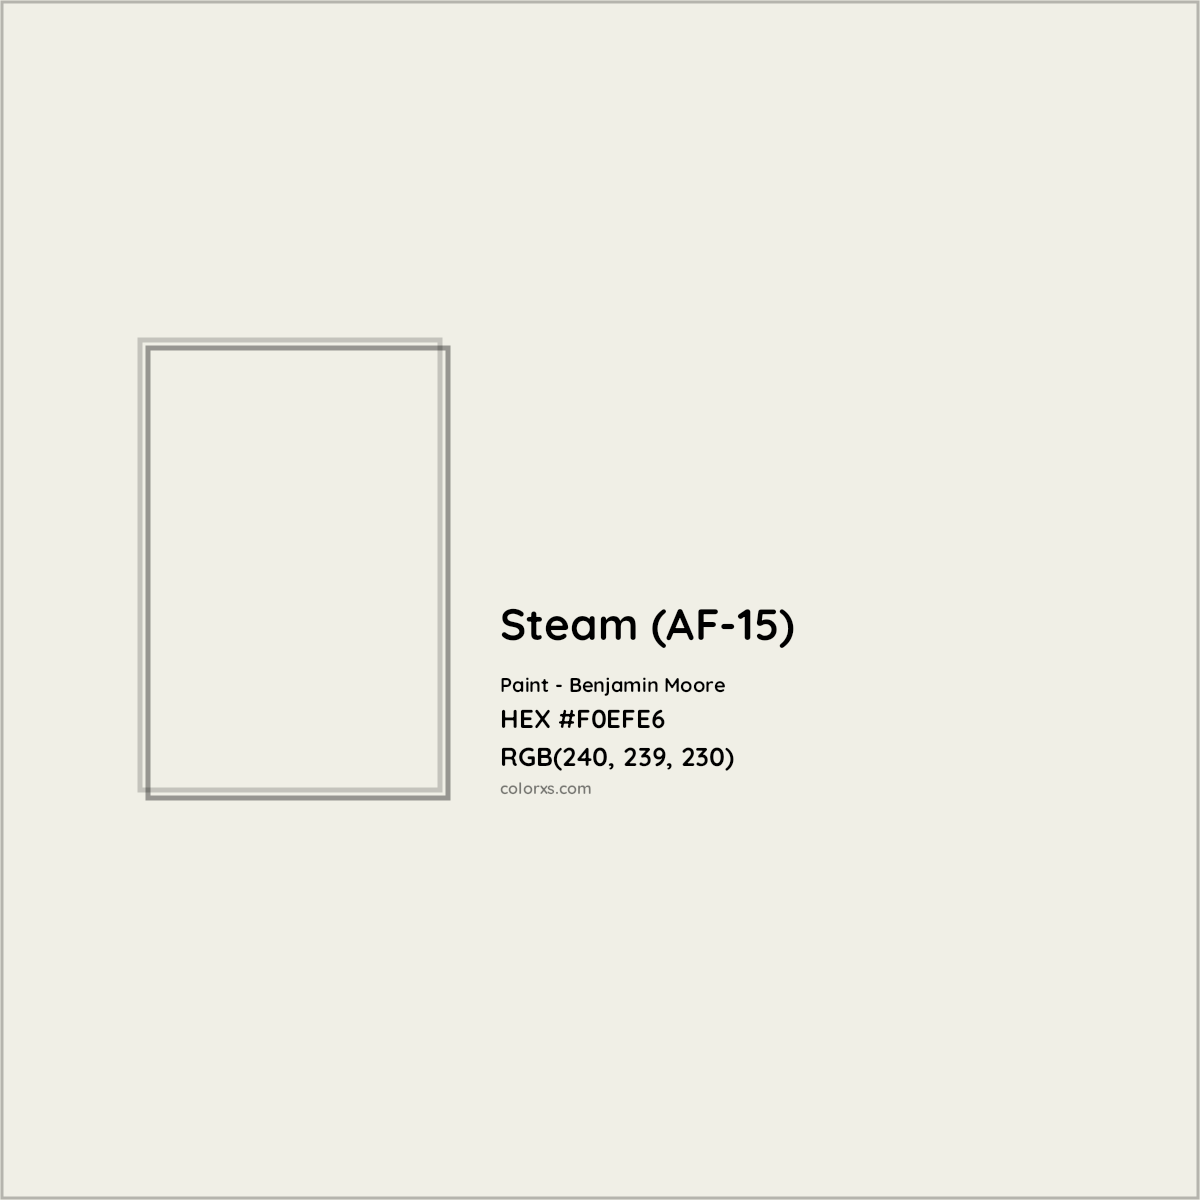 HEX #F0EFE6 Steam (AF-15) Paint Benjamin Moore - Color Code